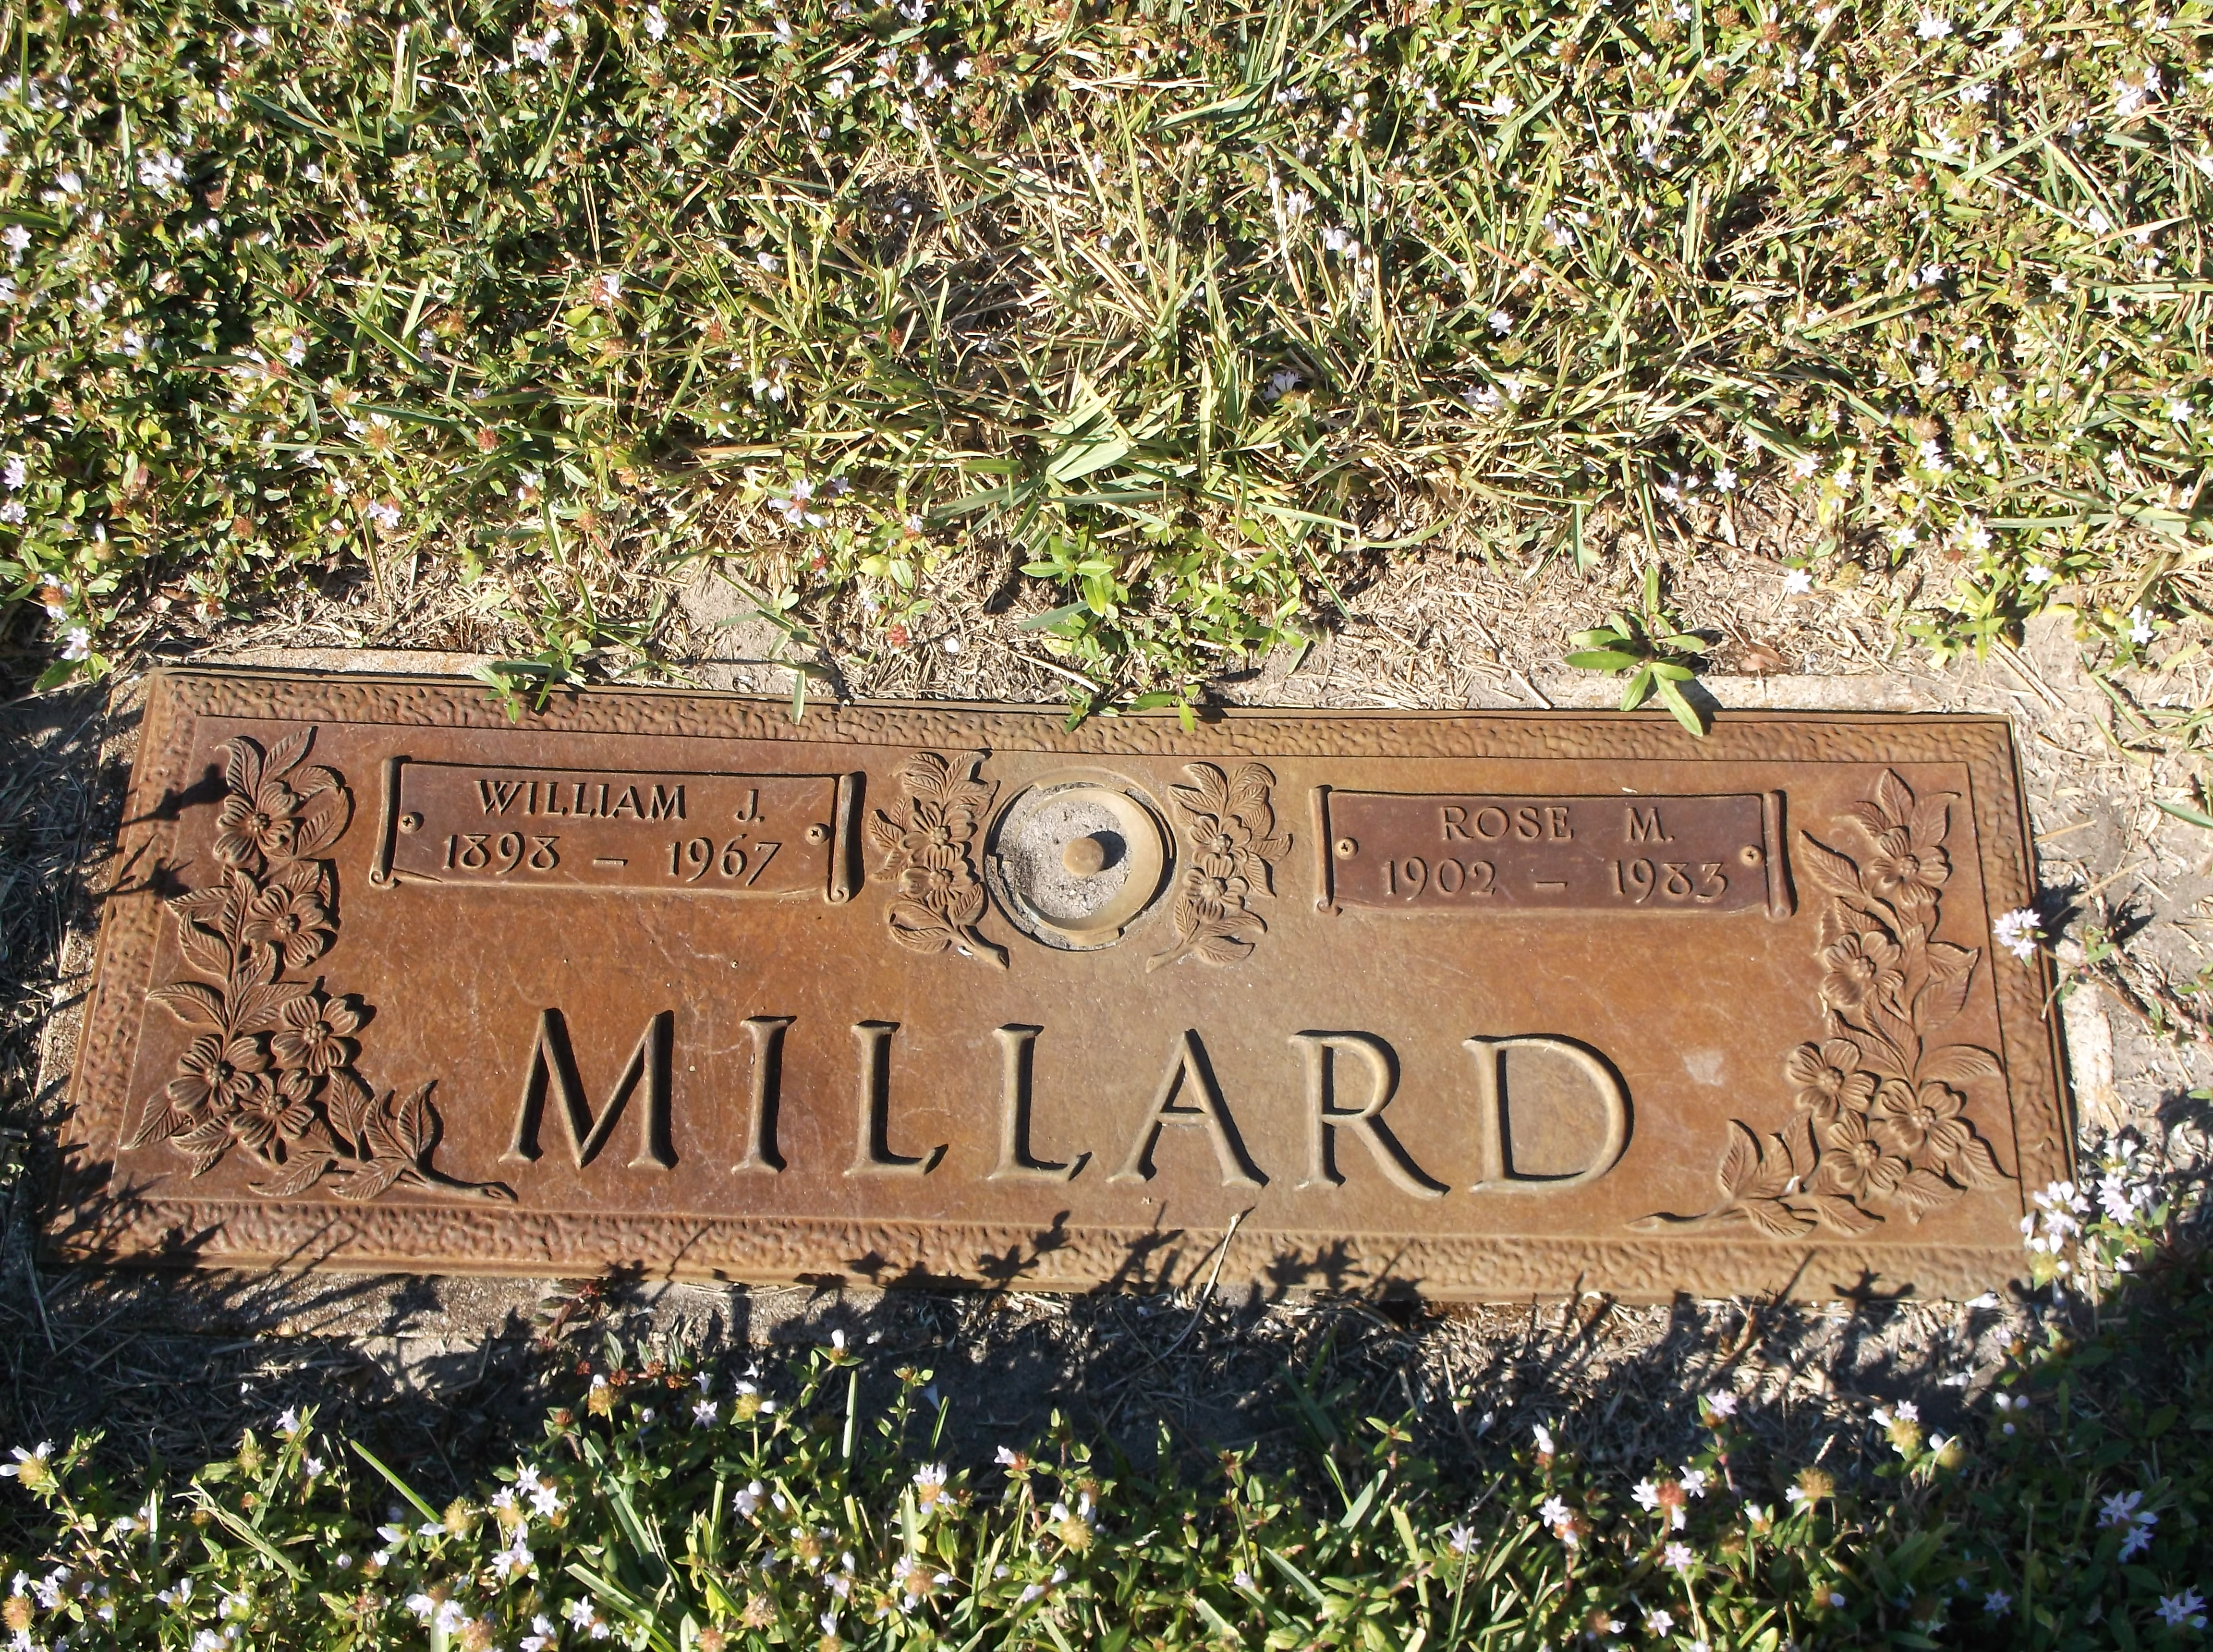 Rose M Millard